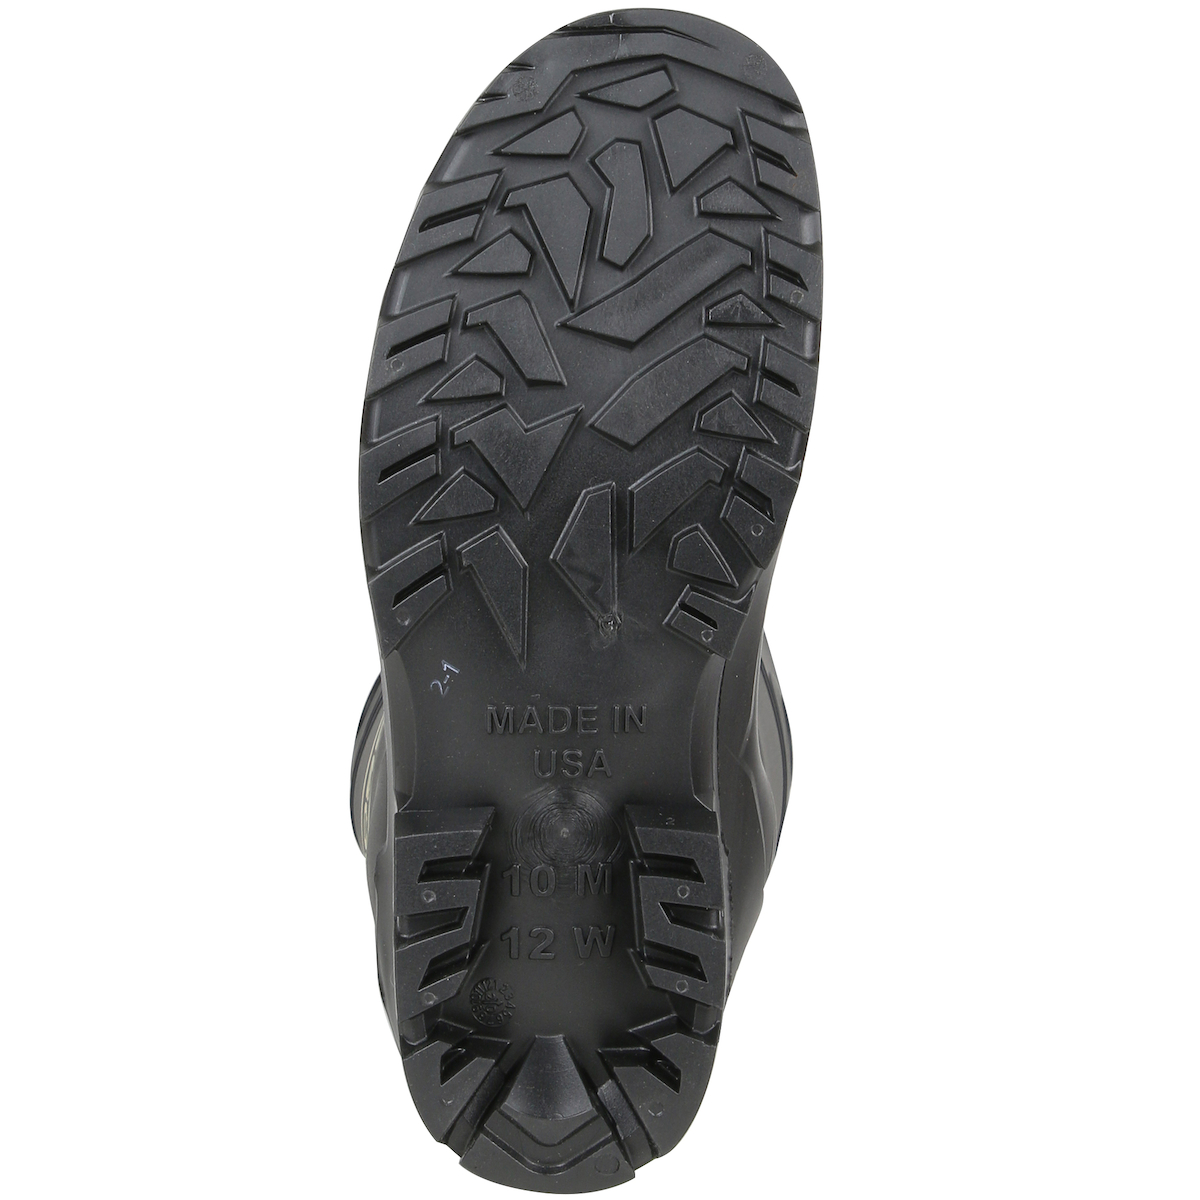 #380-800 PIP® Boss® 16` Black PVC Plain Toe Boots